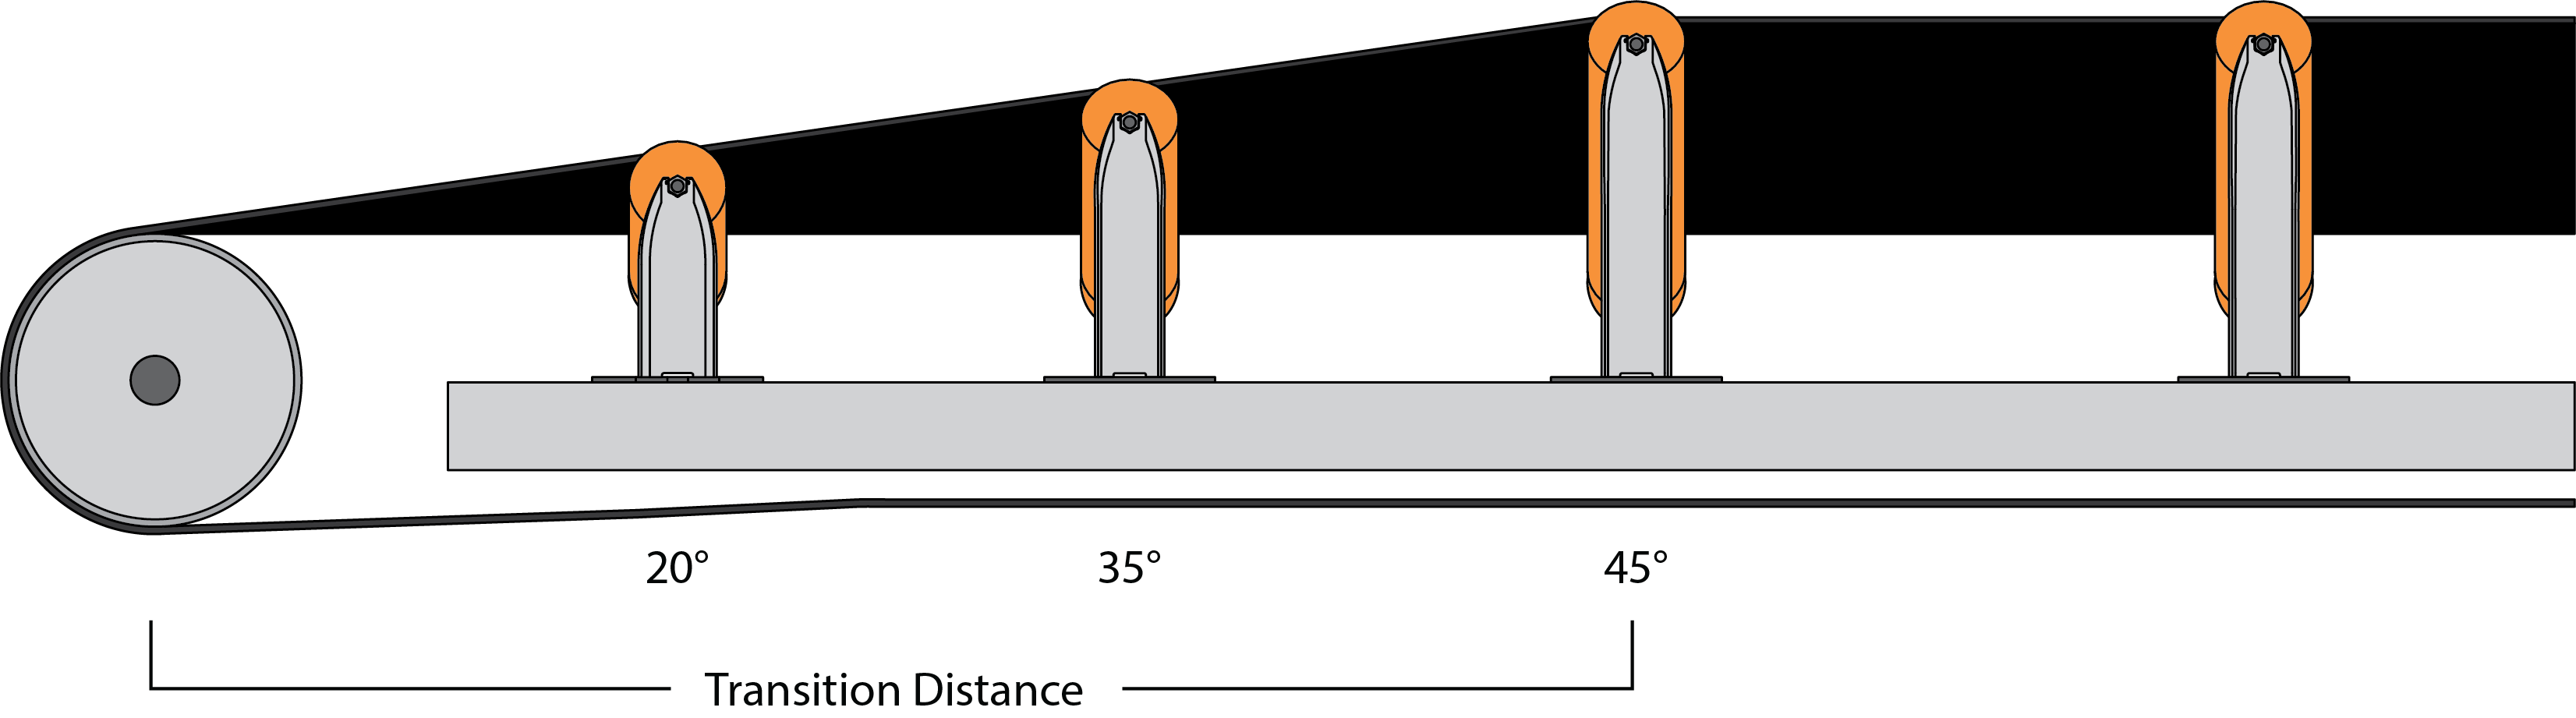 Illustration of conveyor belt transition distance.